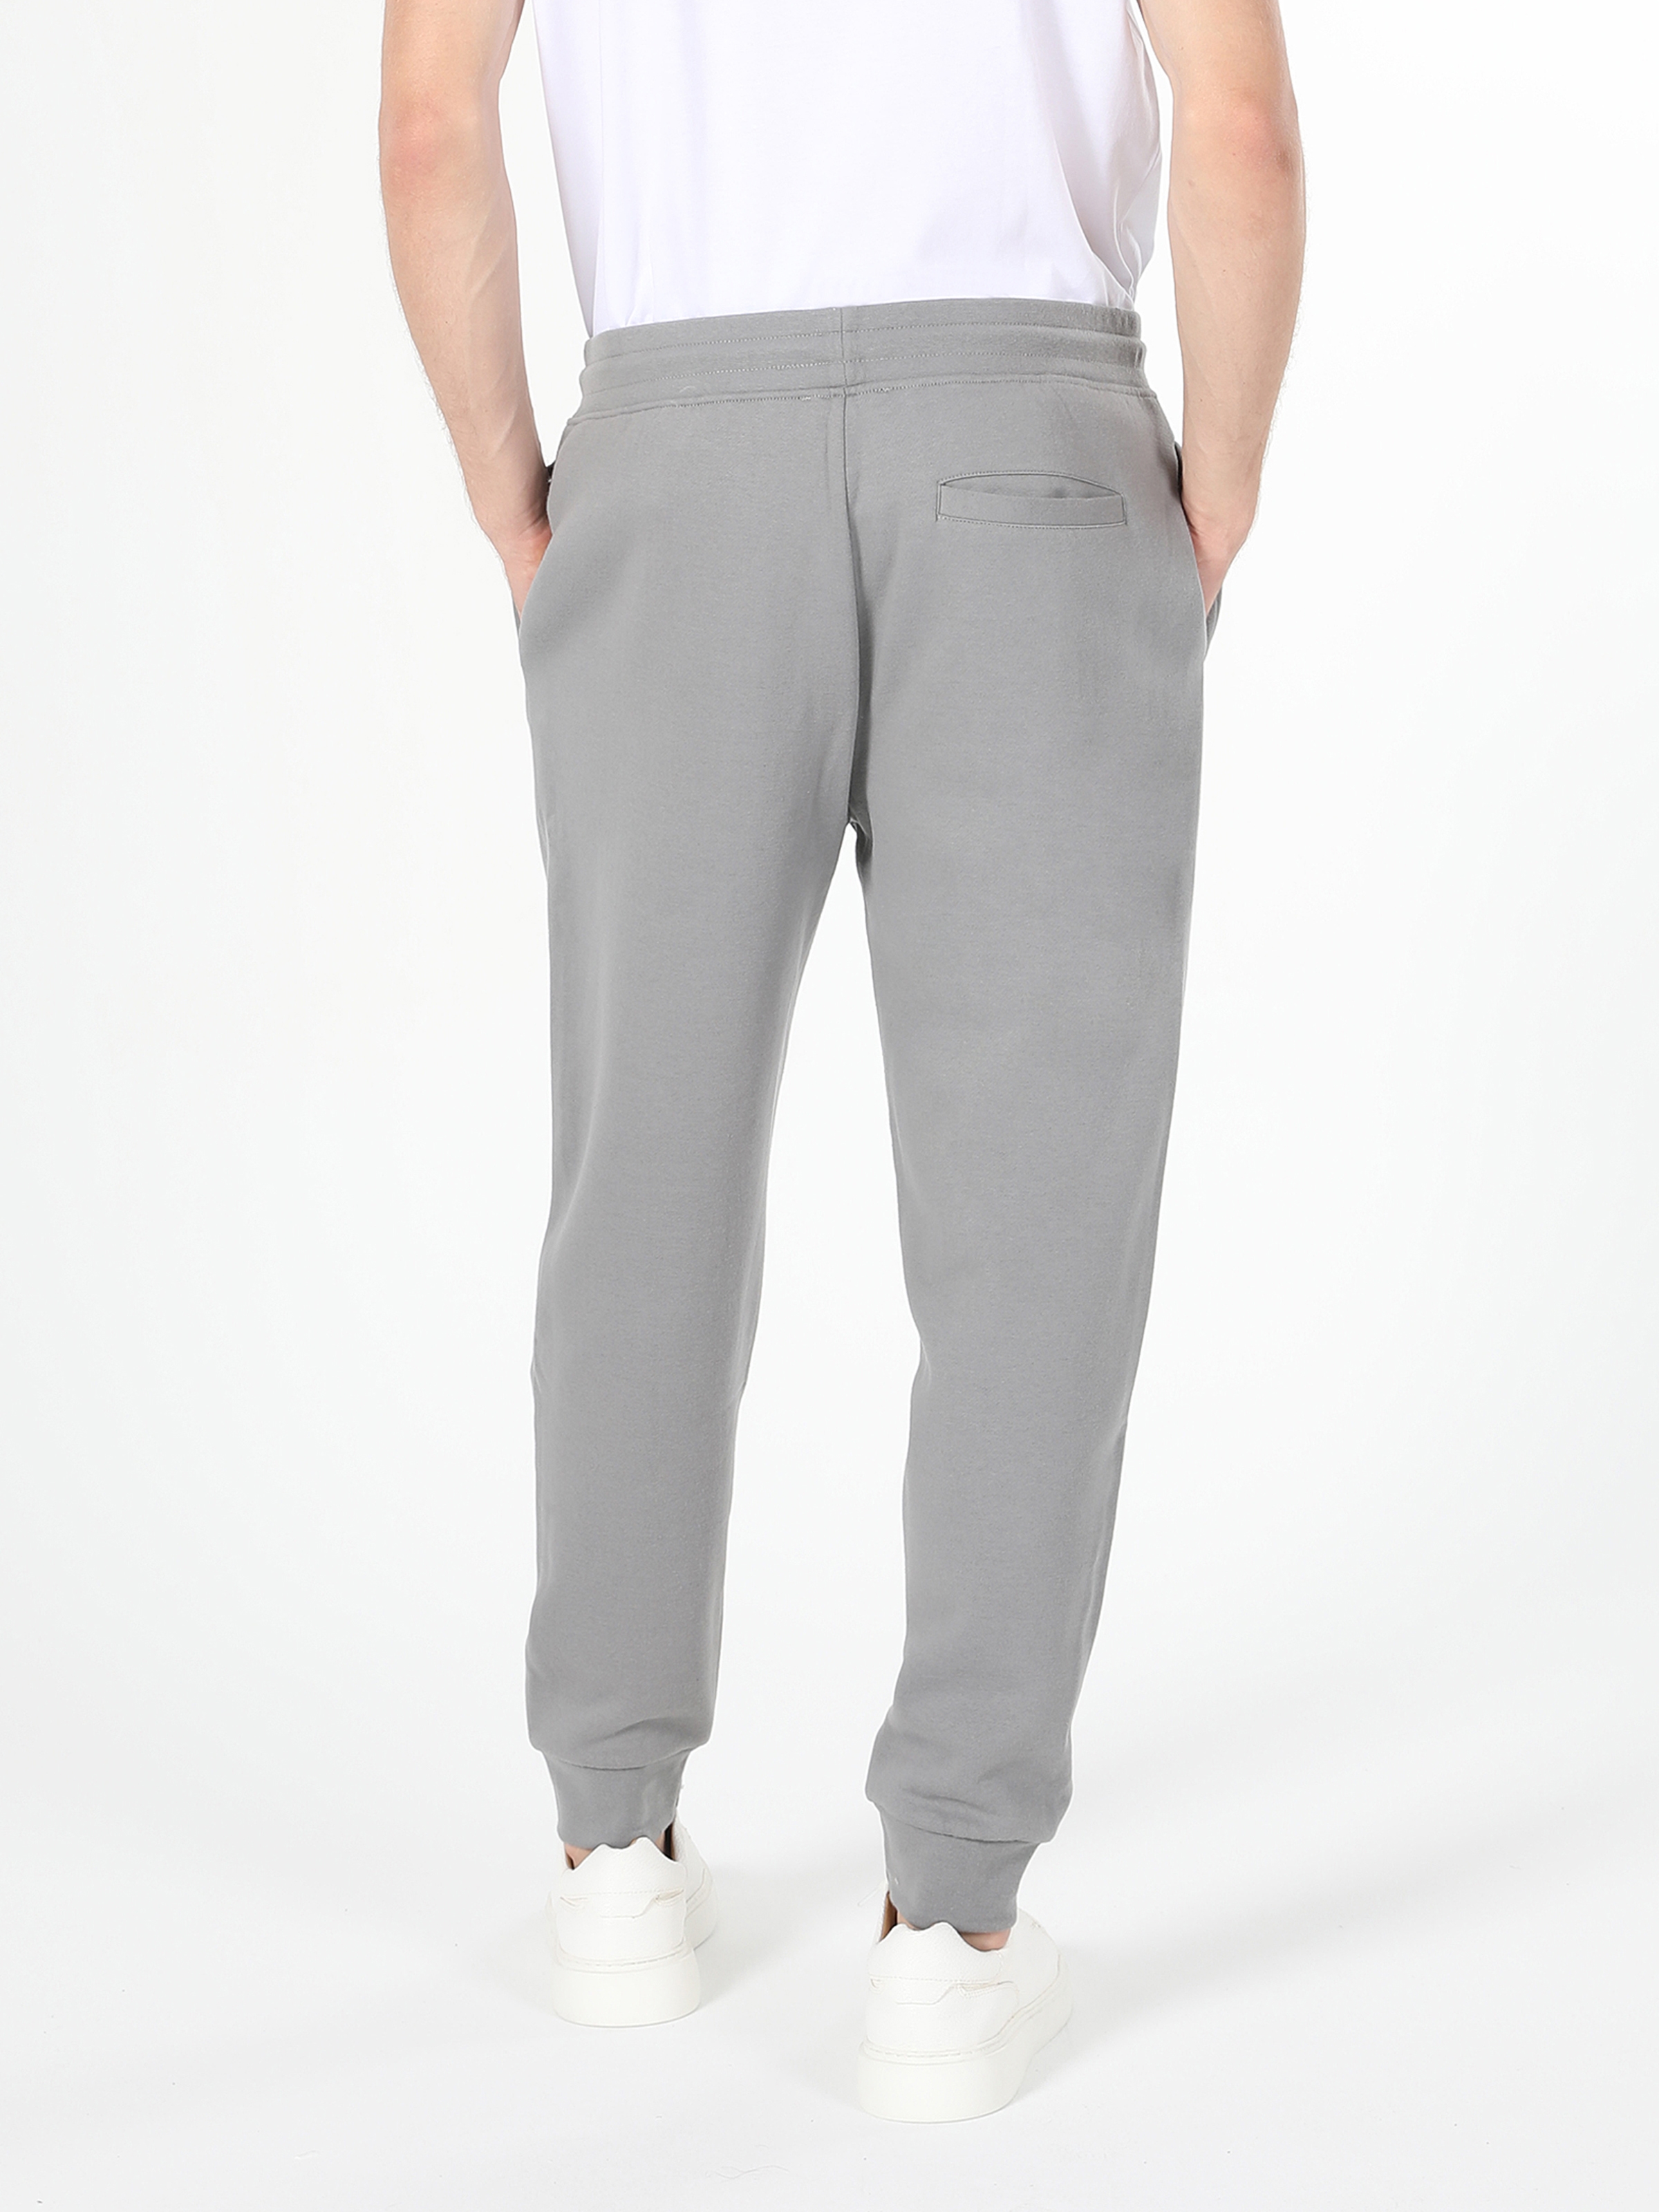 Afficher les détails de Pantalon De Survêtement Gris Taille Moyenne Coupe Slim Pour Homme